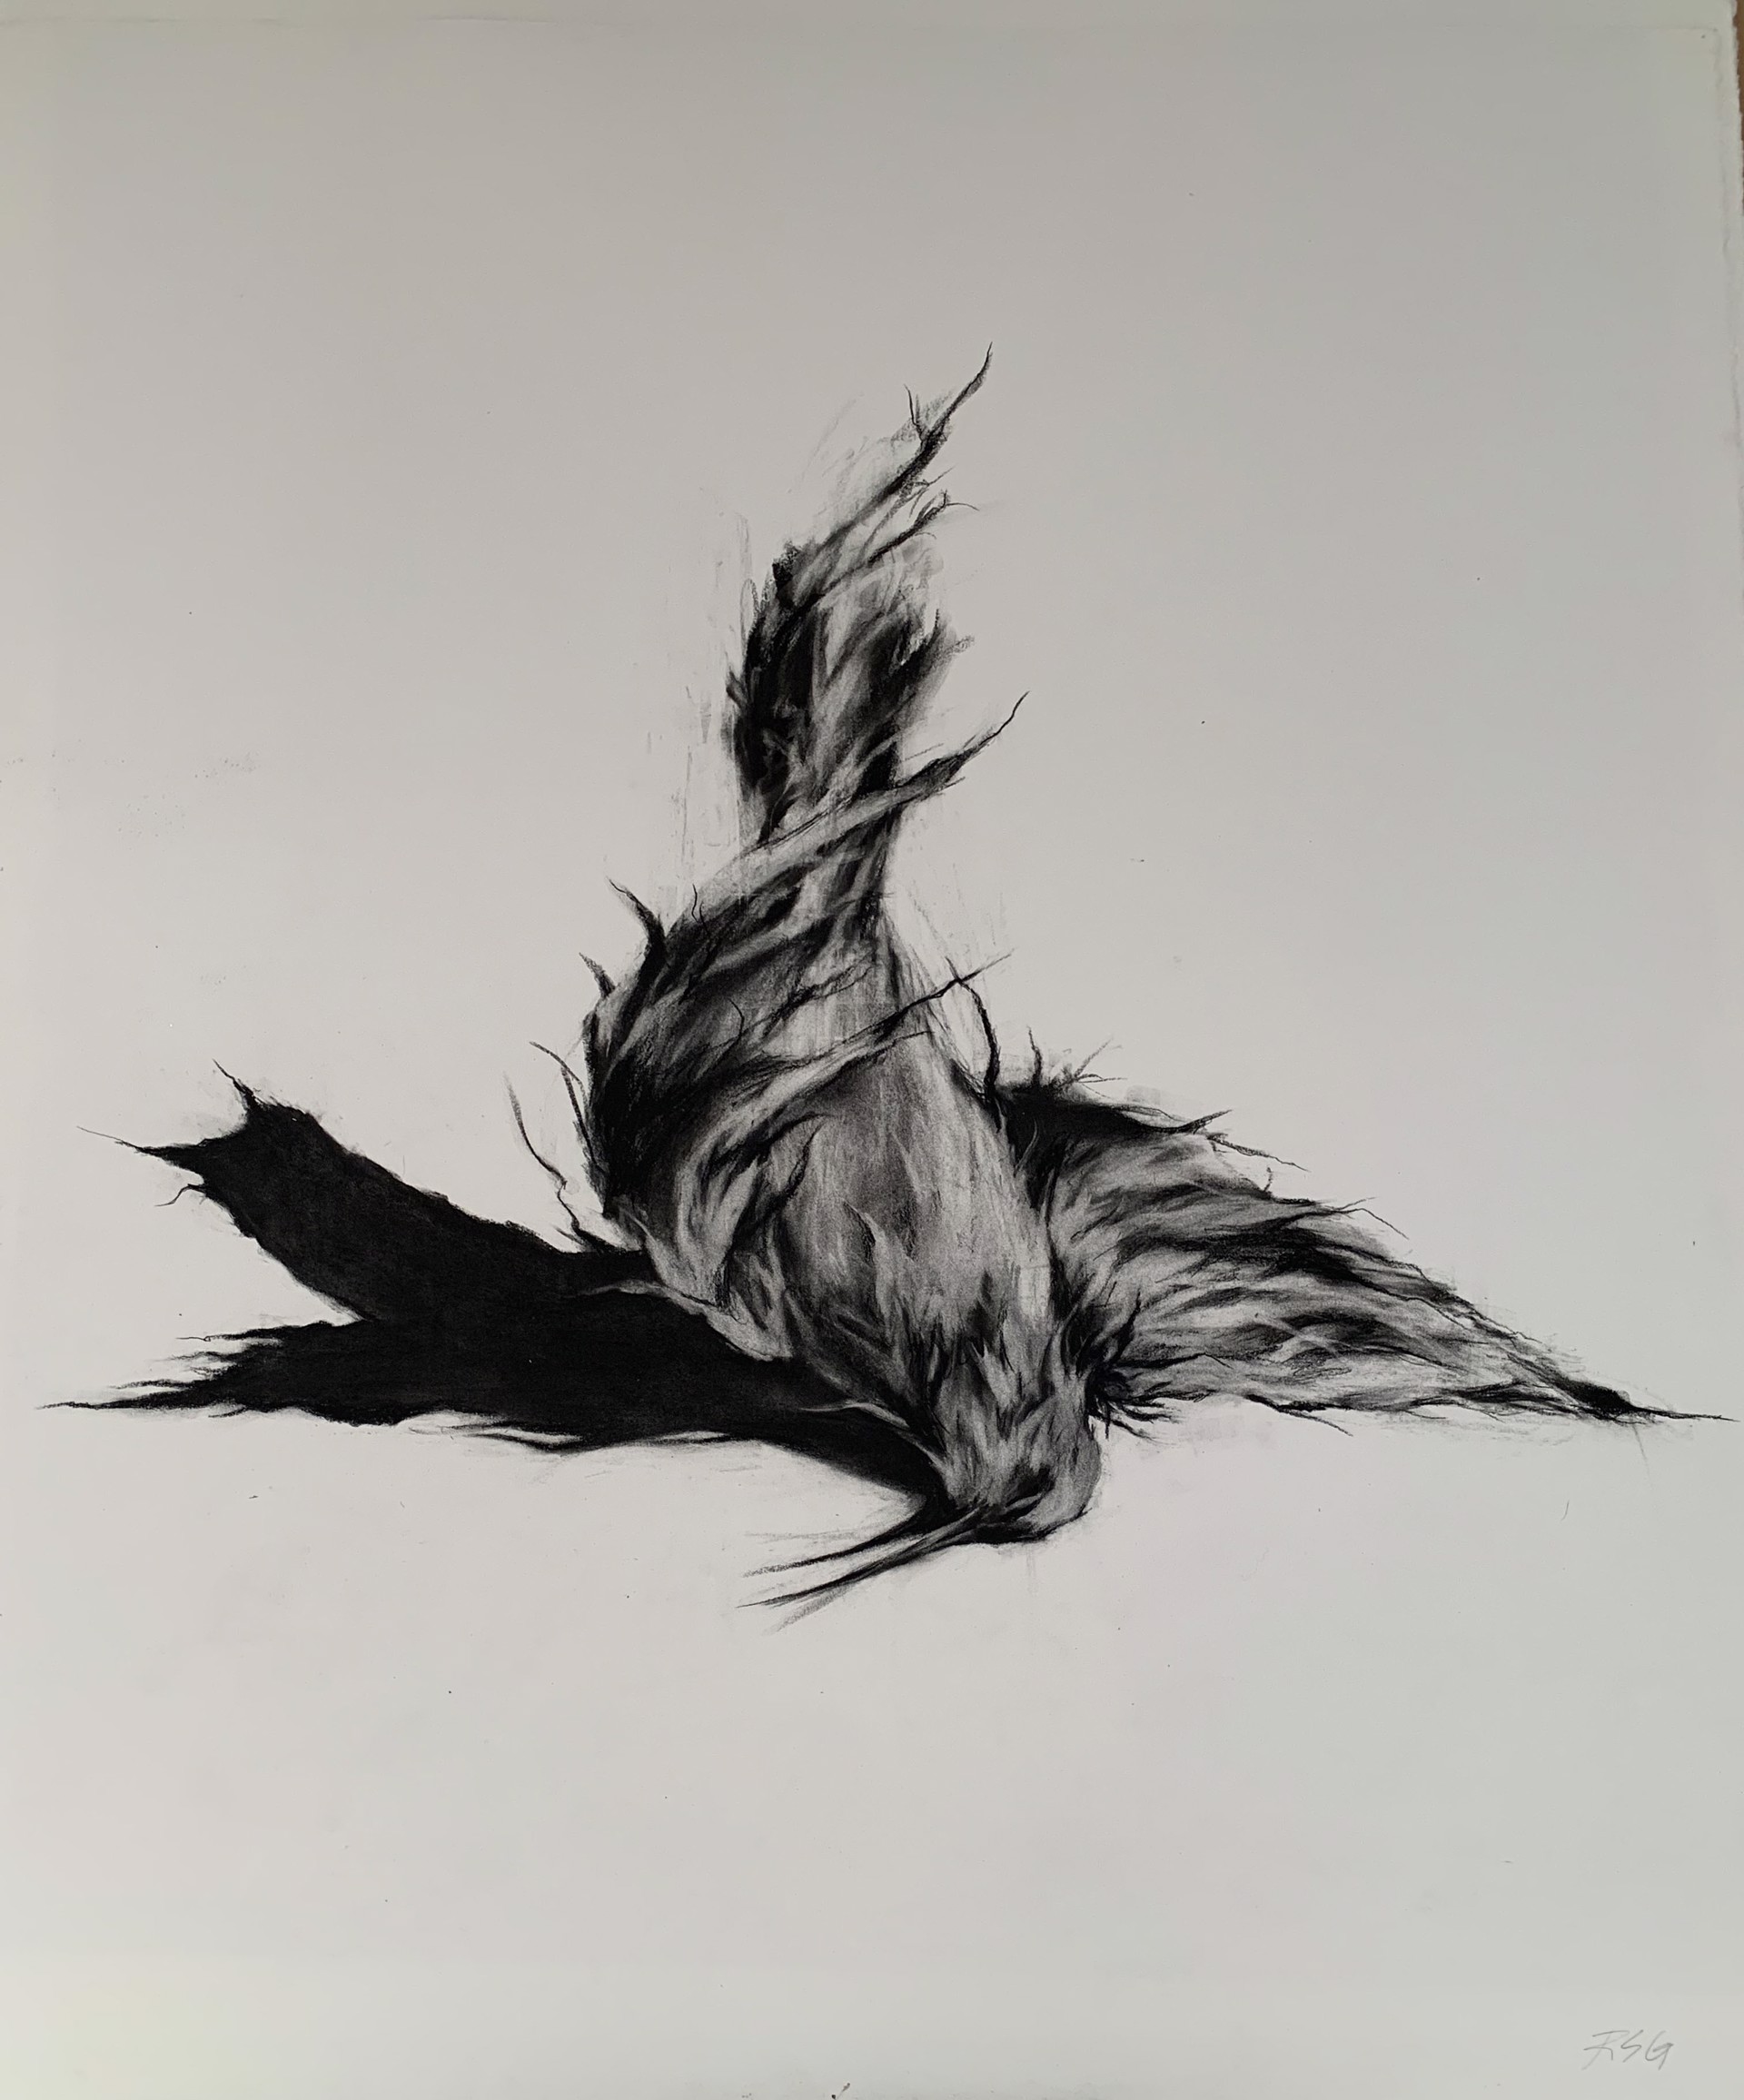 Bird (Cycle of Life) by Rachel Gardner